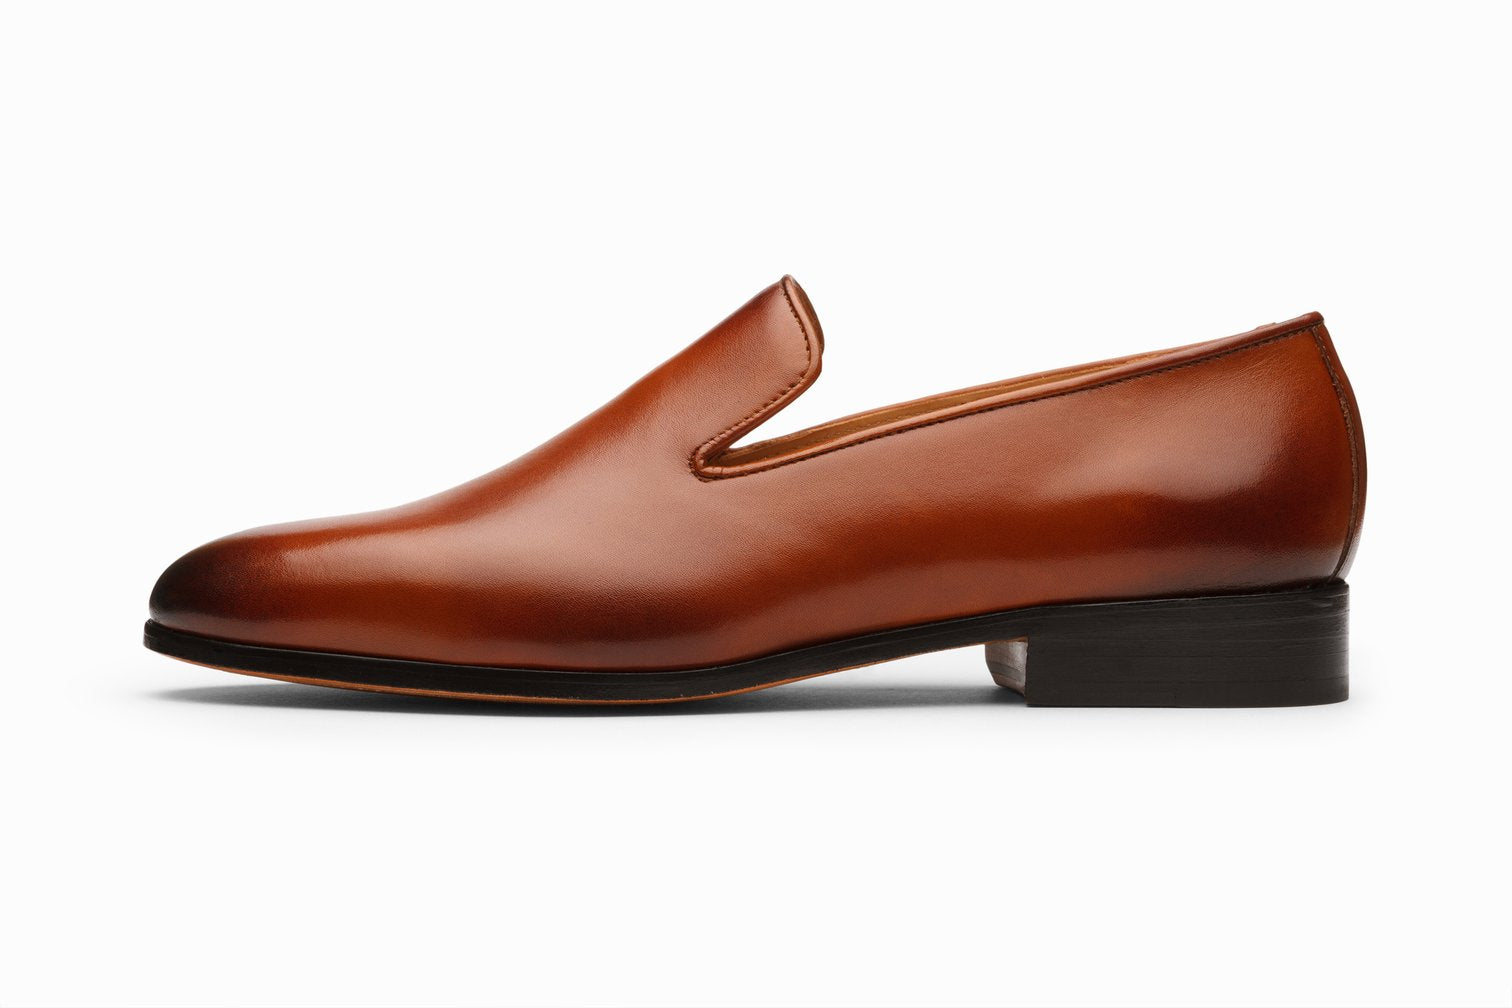 Venetian loafer cognac, formal shoes for men in Dubai.